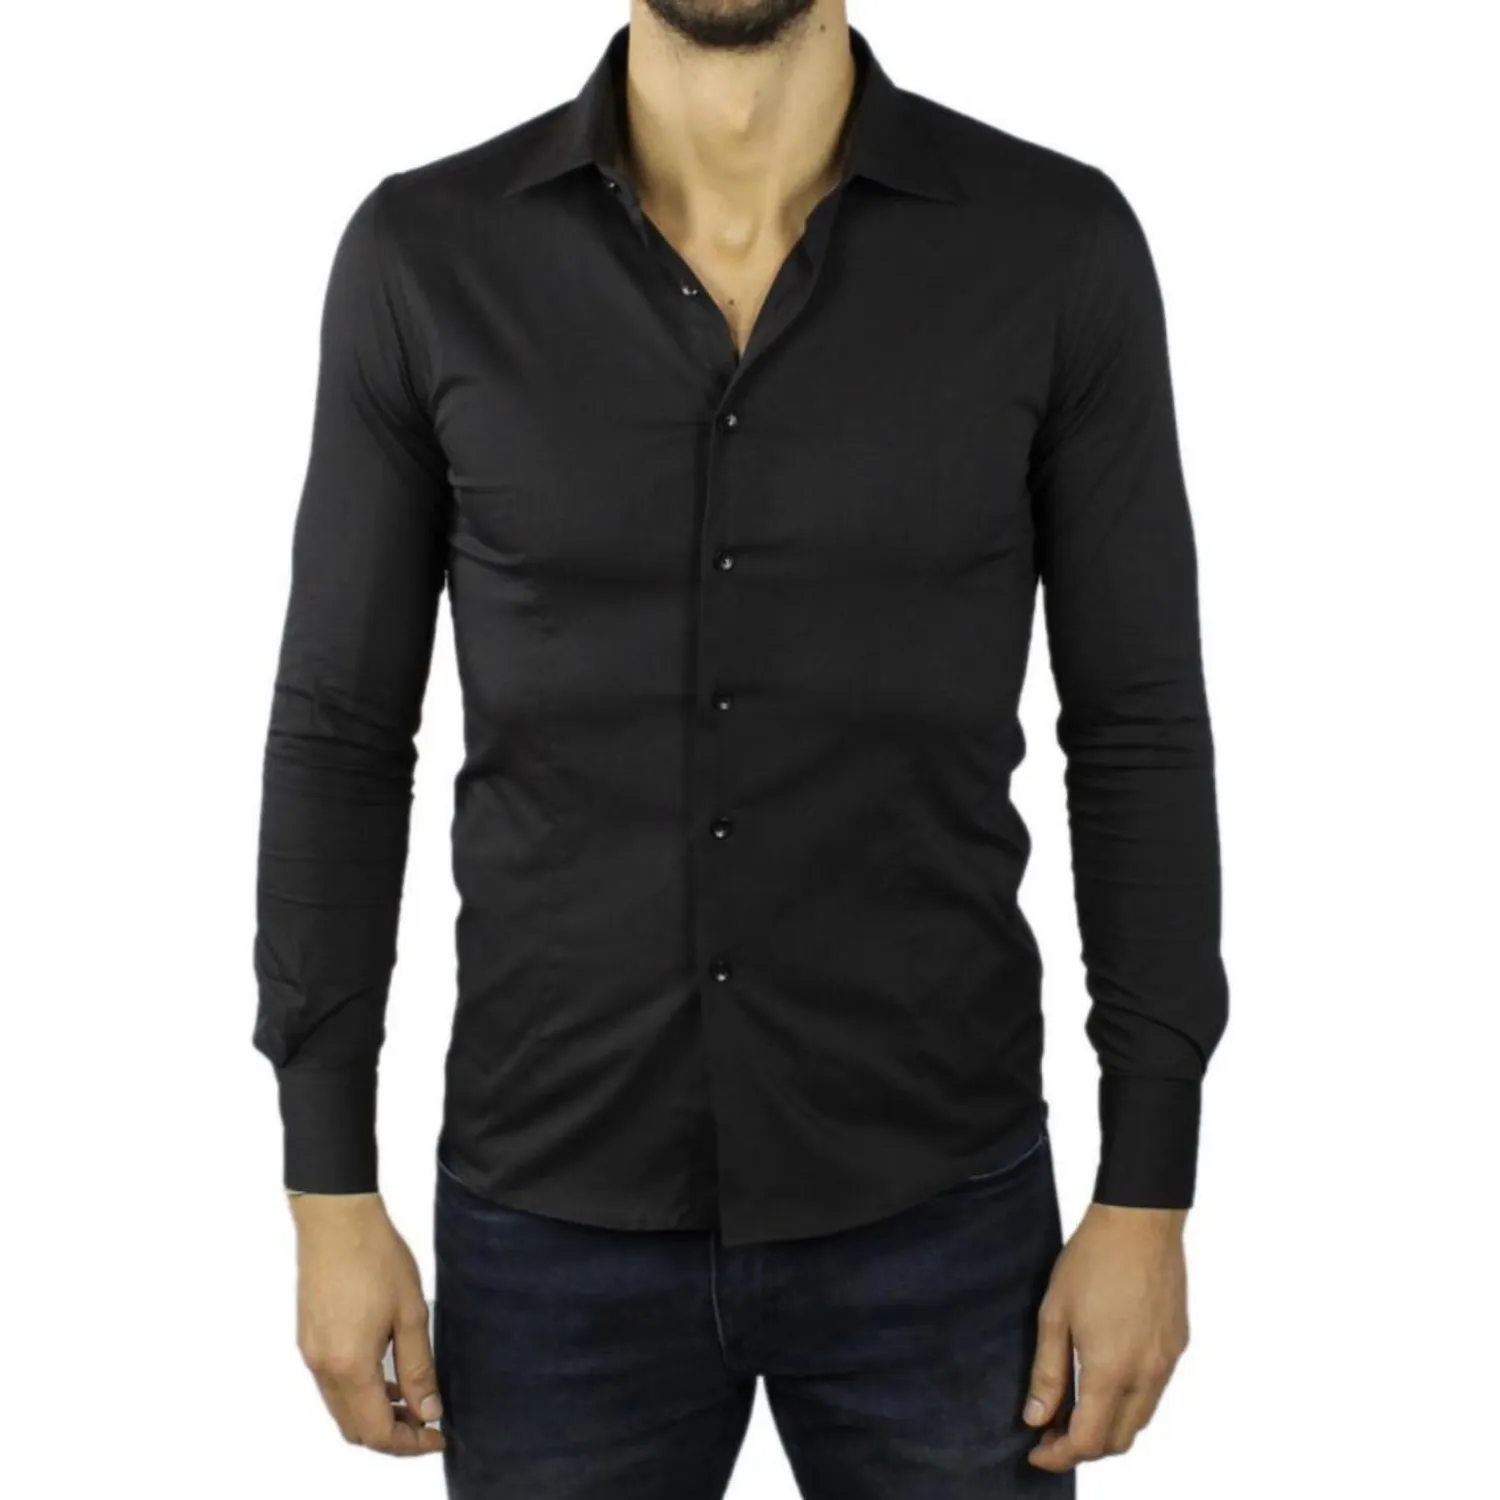 Ανδρικό μακρυμάνικο πουκάμισο μονόχρωμο μαύρο